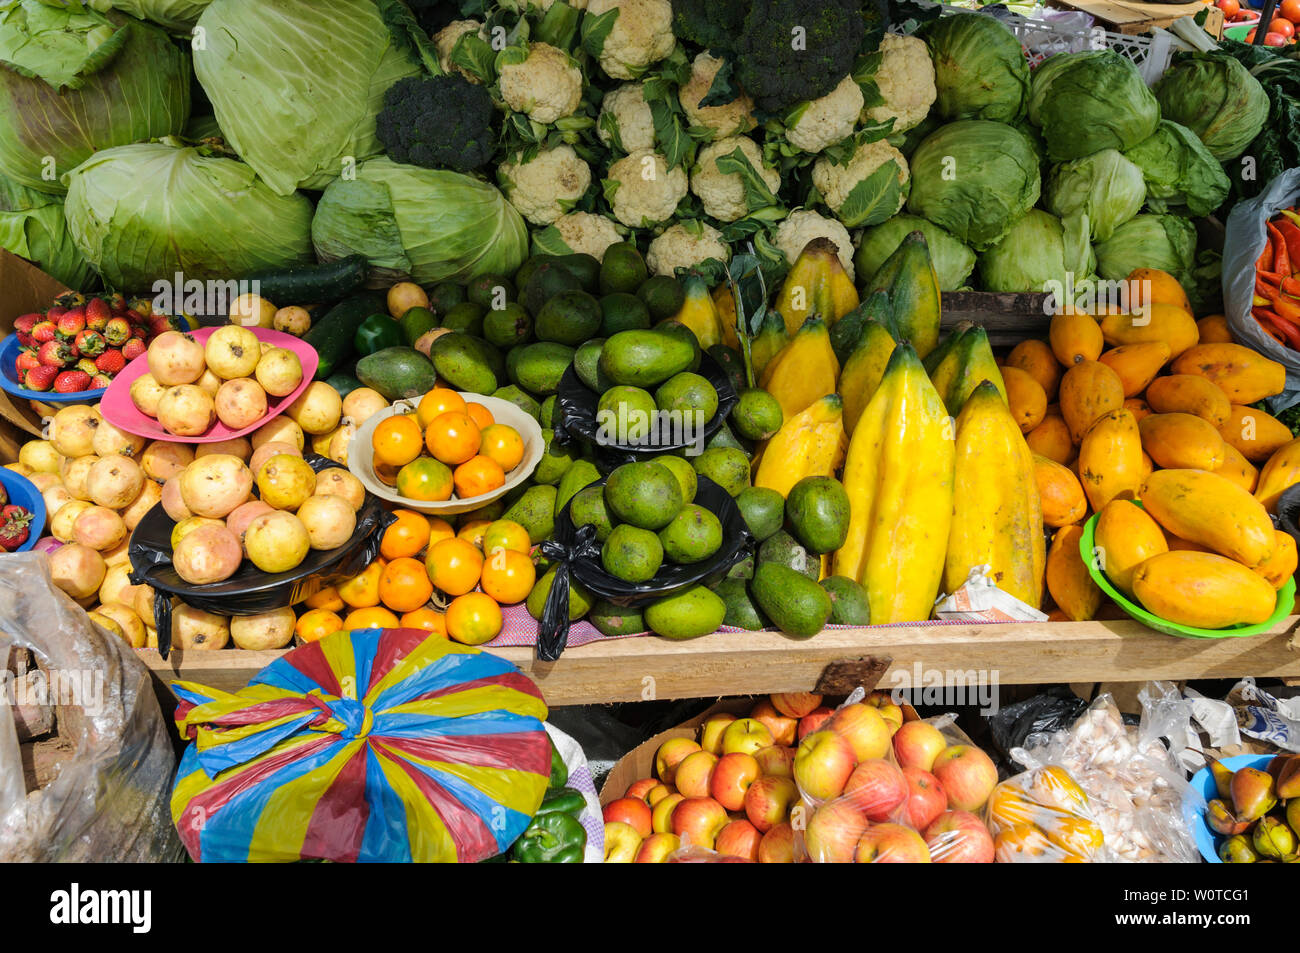 Marktstand auf einem Bauernmarkt mit frischem Obst und Gemuese. Stock Photo